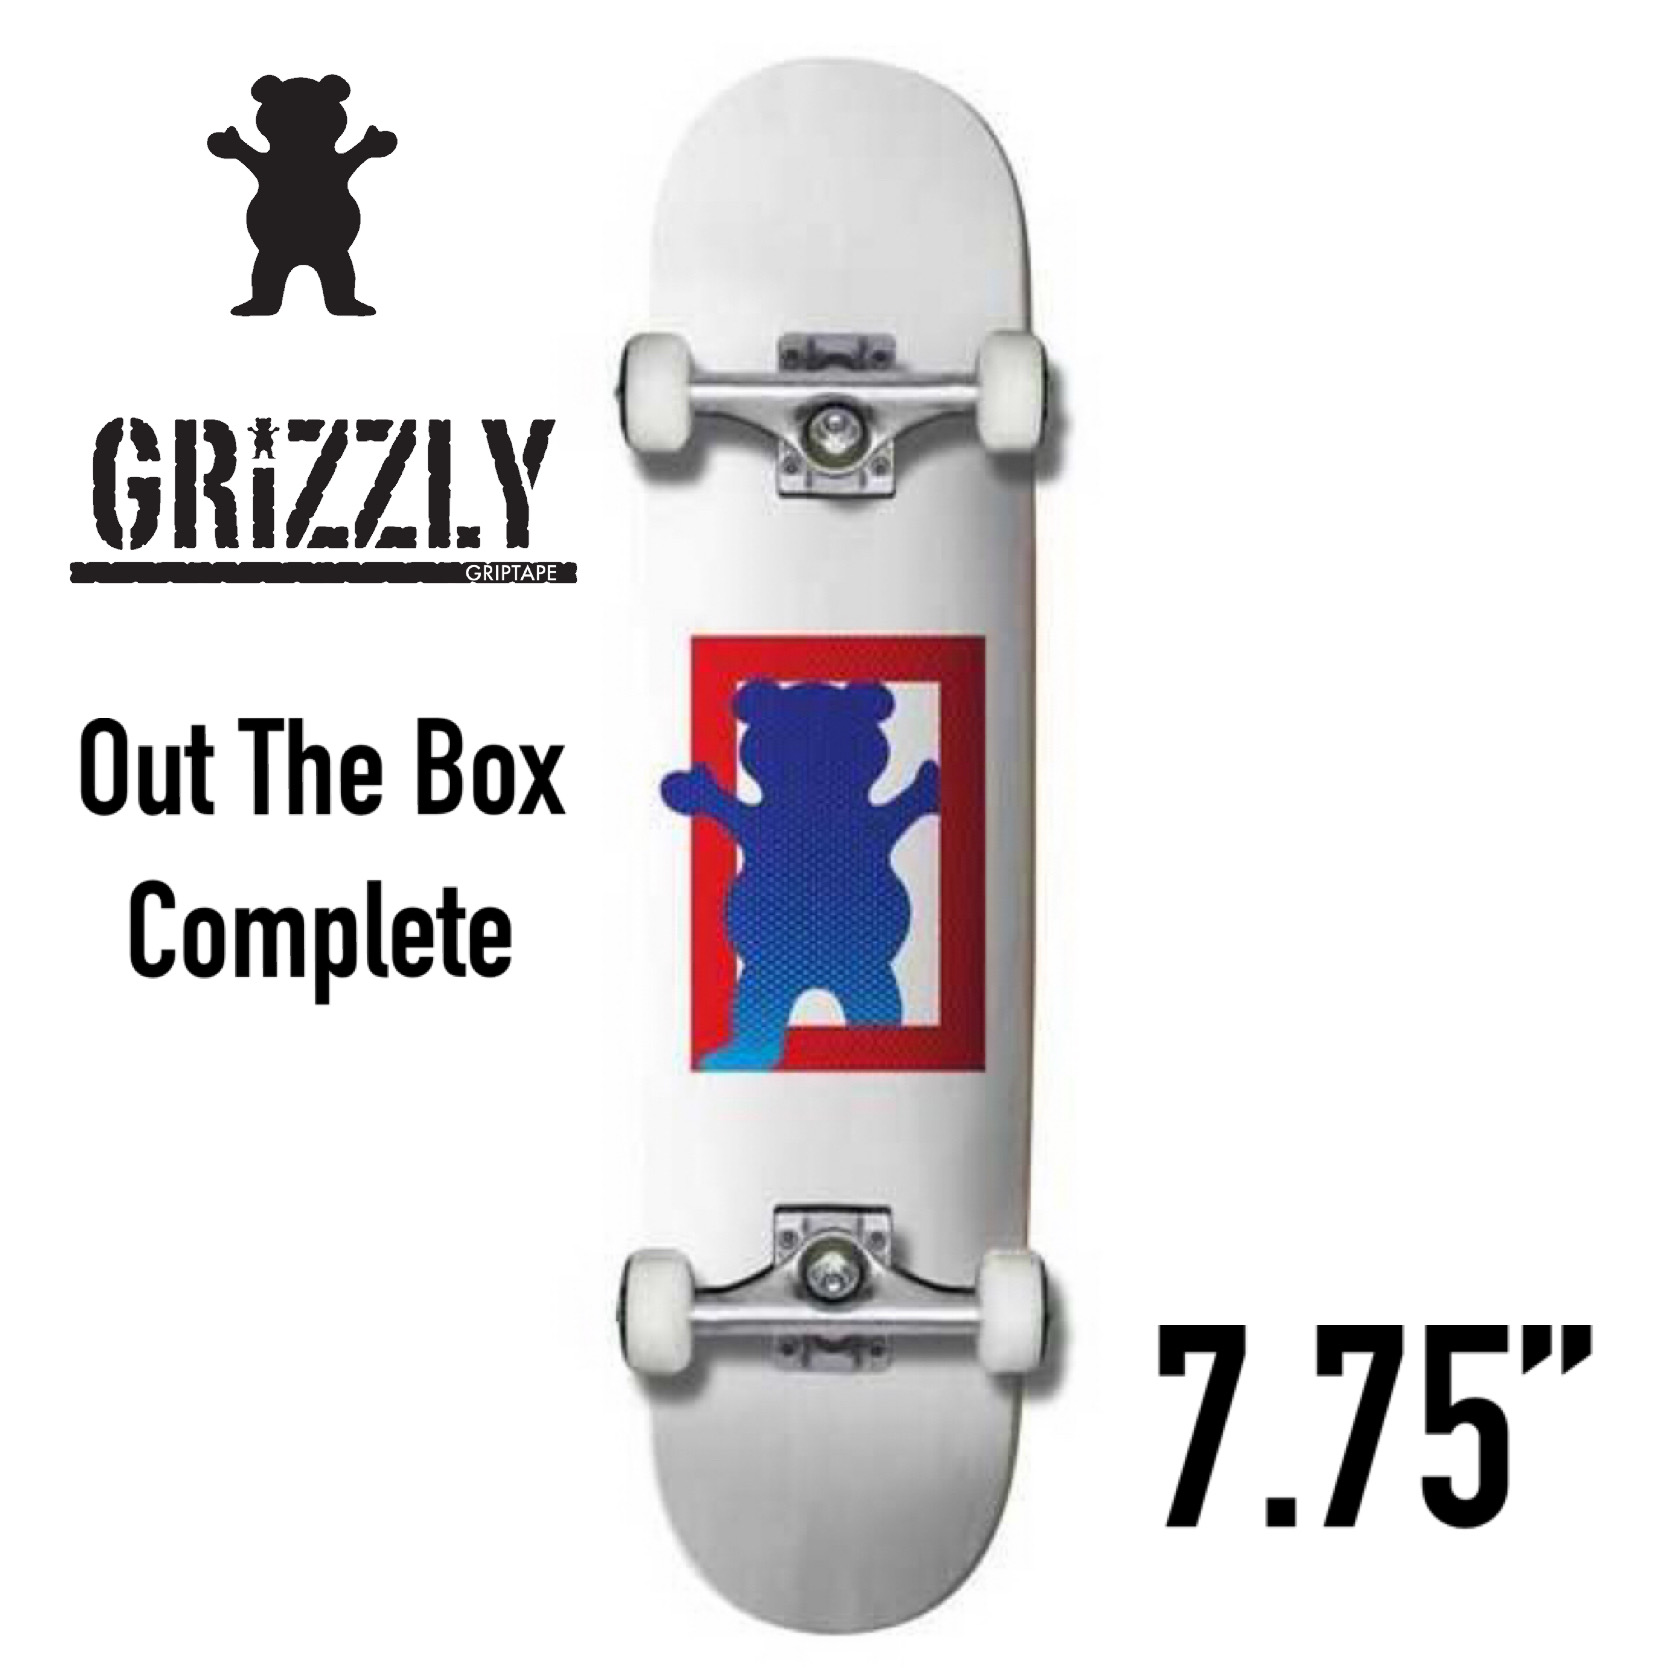 安い Grizzly Out The Box Complete 7 75 グリズリー ザ ボックス コンプリート ベアカット アウト レギュラー スケボー スケート スケートボード 完成品 かわいい おしゃれ かっこいい ストリート キッズ レディース 初心者 くま 激安ブランド Greenzonwheelz Com